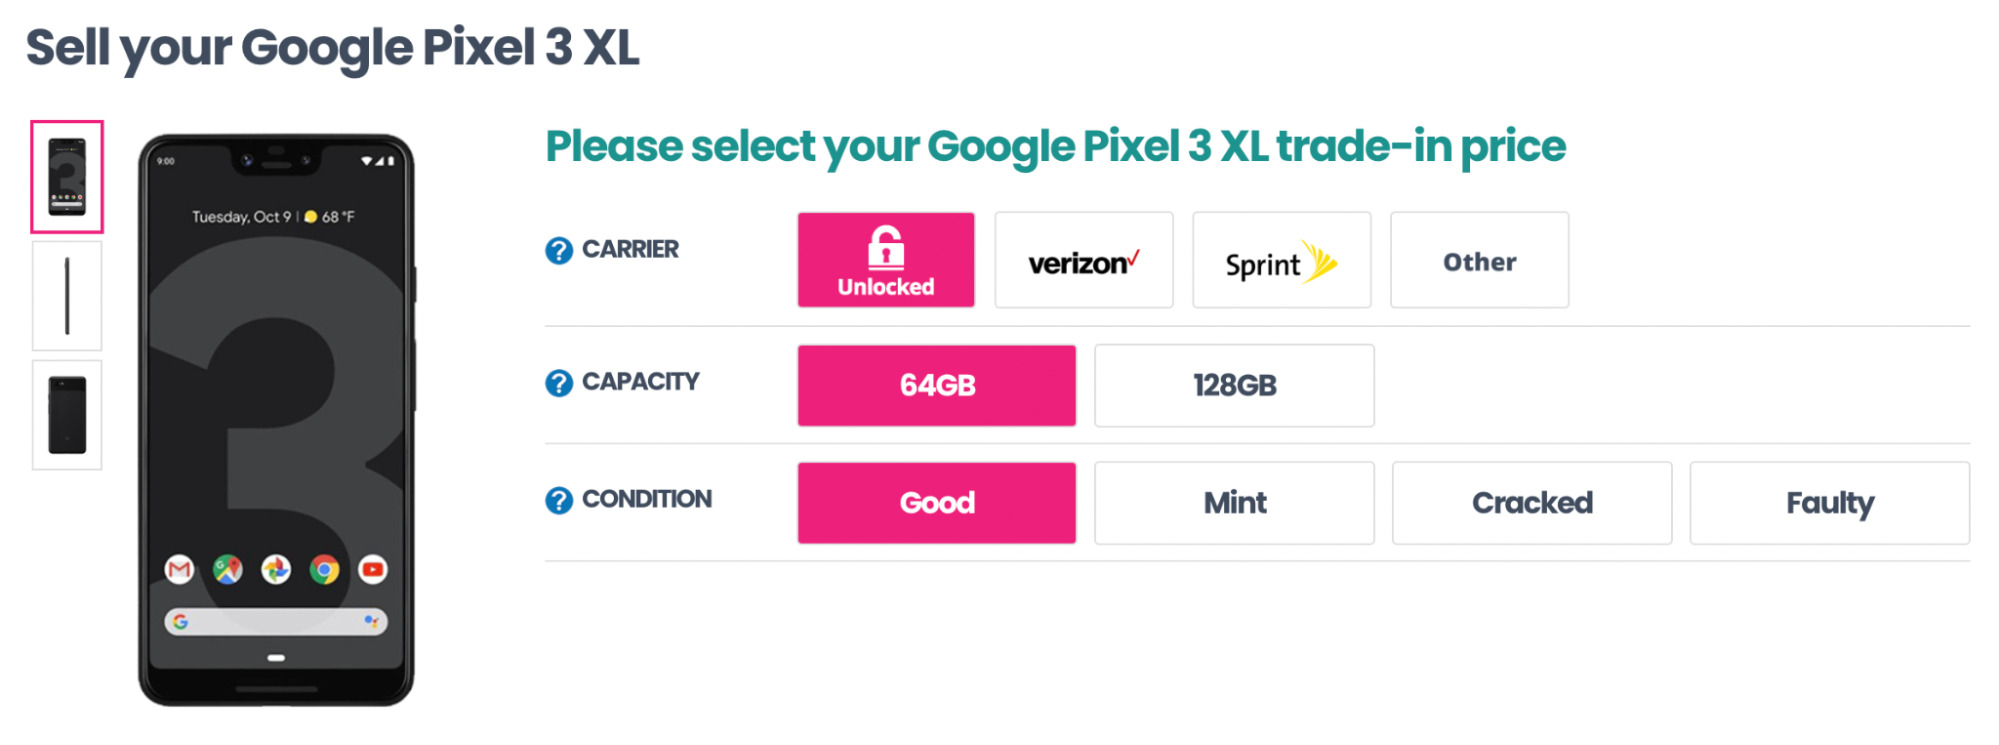 销售二手 Google Pixel 3 XL 的联盟分销的落地页